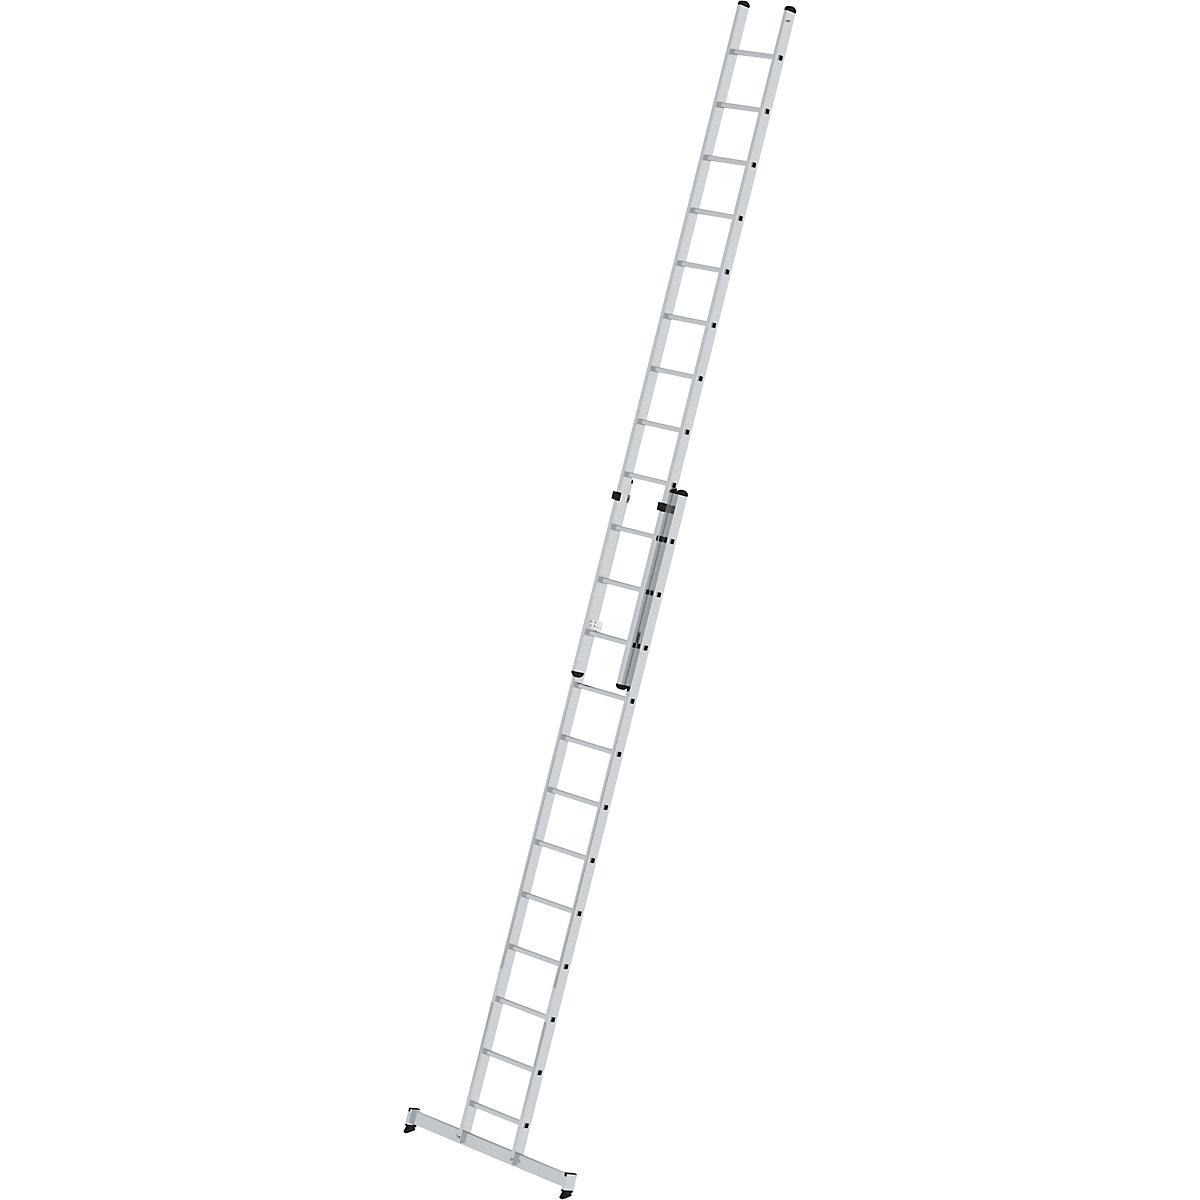 Výškově přestavitelný opěrný žebřík – MUNK, posuvný žebřík, 2dílný, 2 x 12 příčlí, s příčníkem nivello®-9